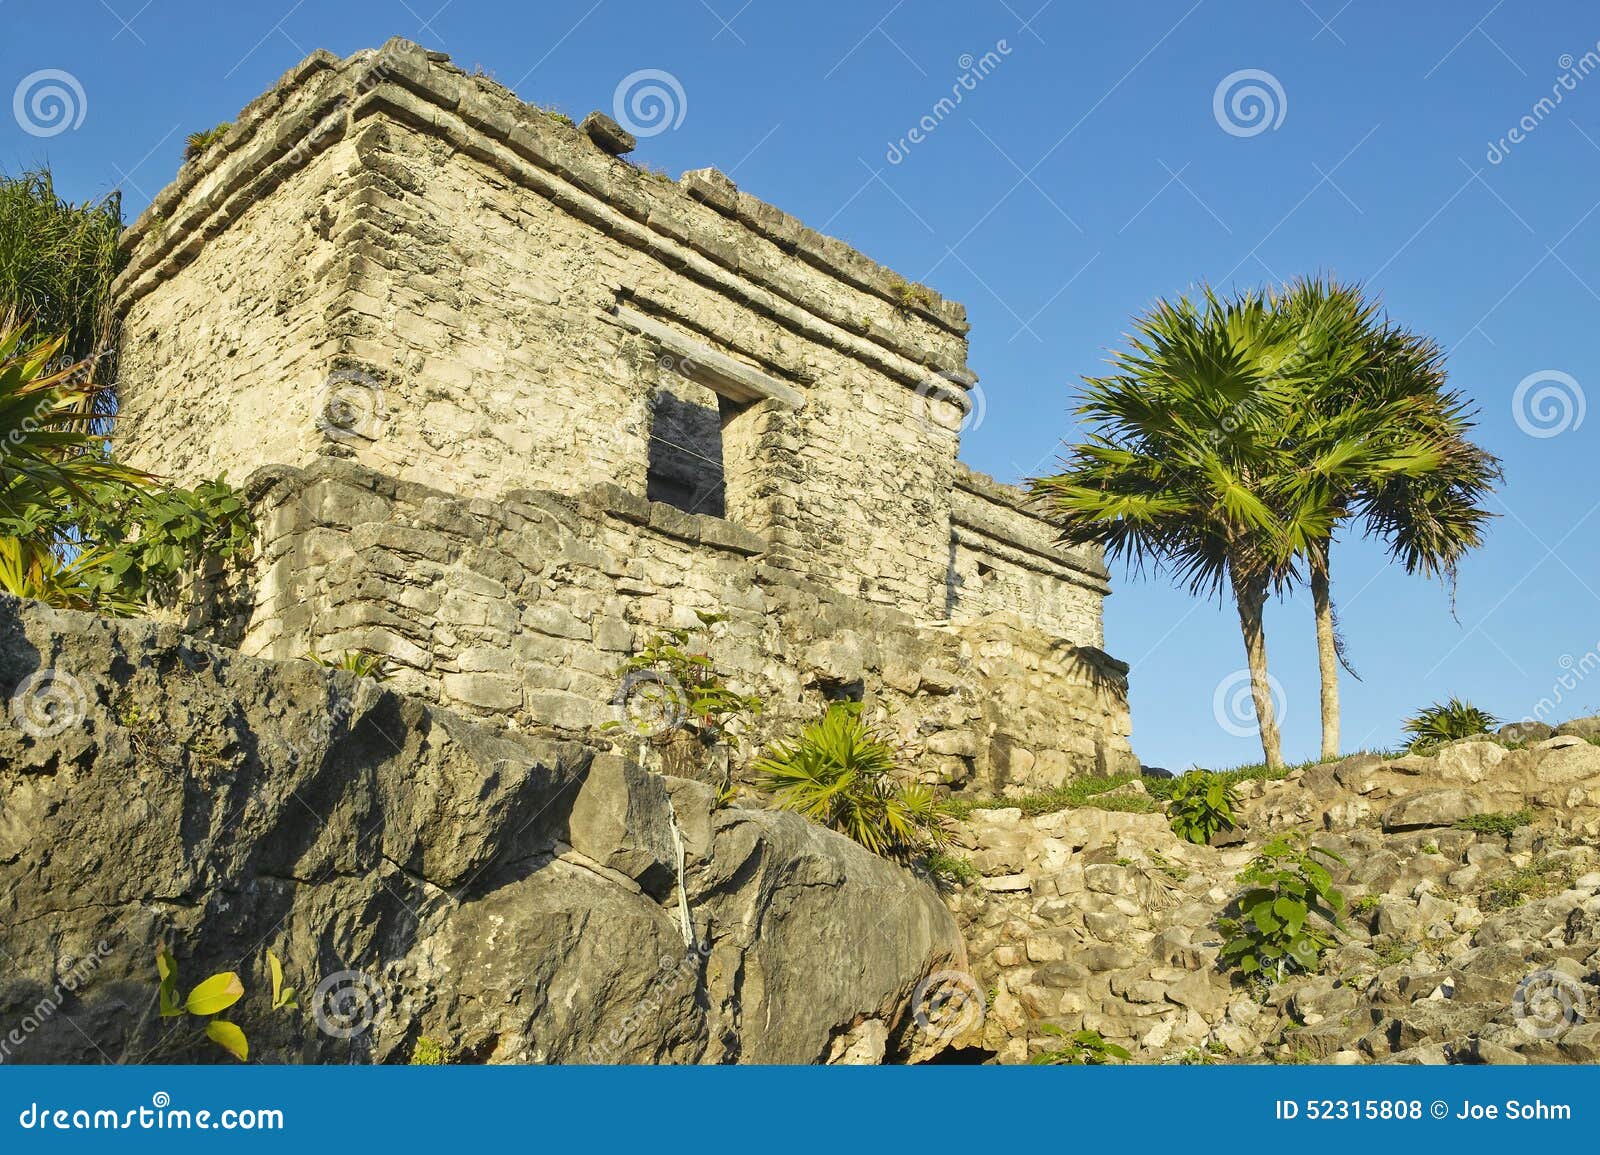 templo del dios del viento mayan ruins of ruinas de tulum (tulum ruins) in quintana roo, yucatan peninsula, mexico